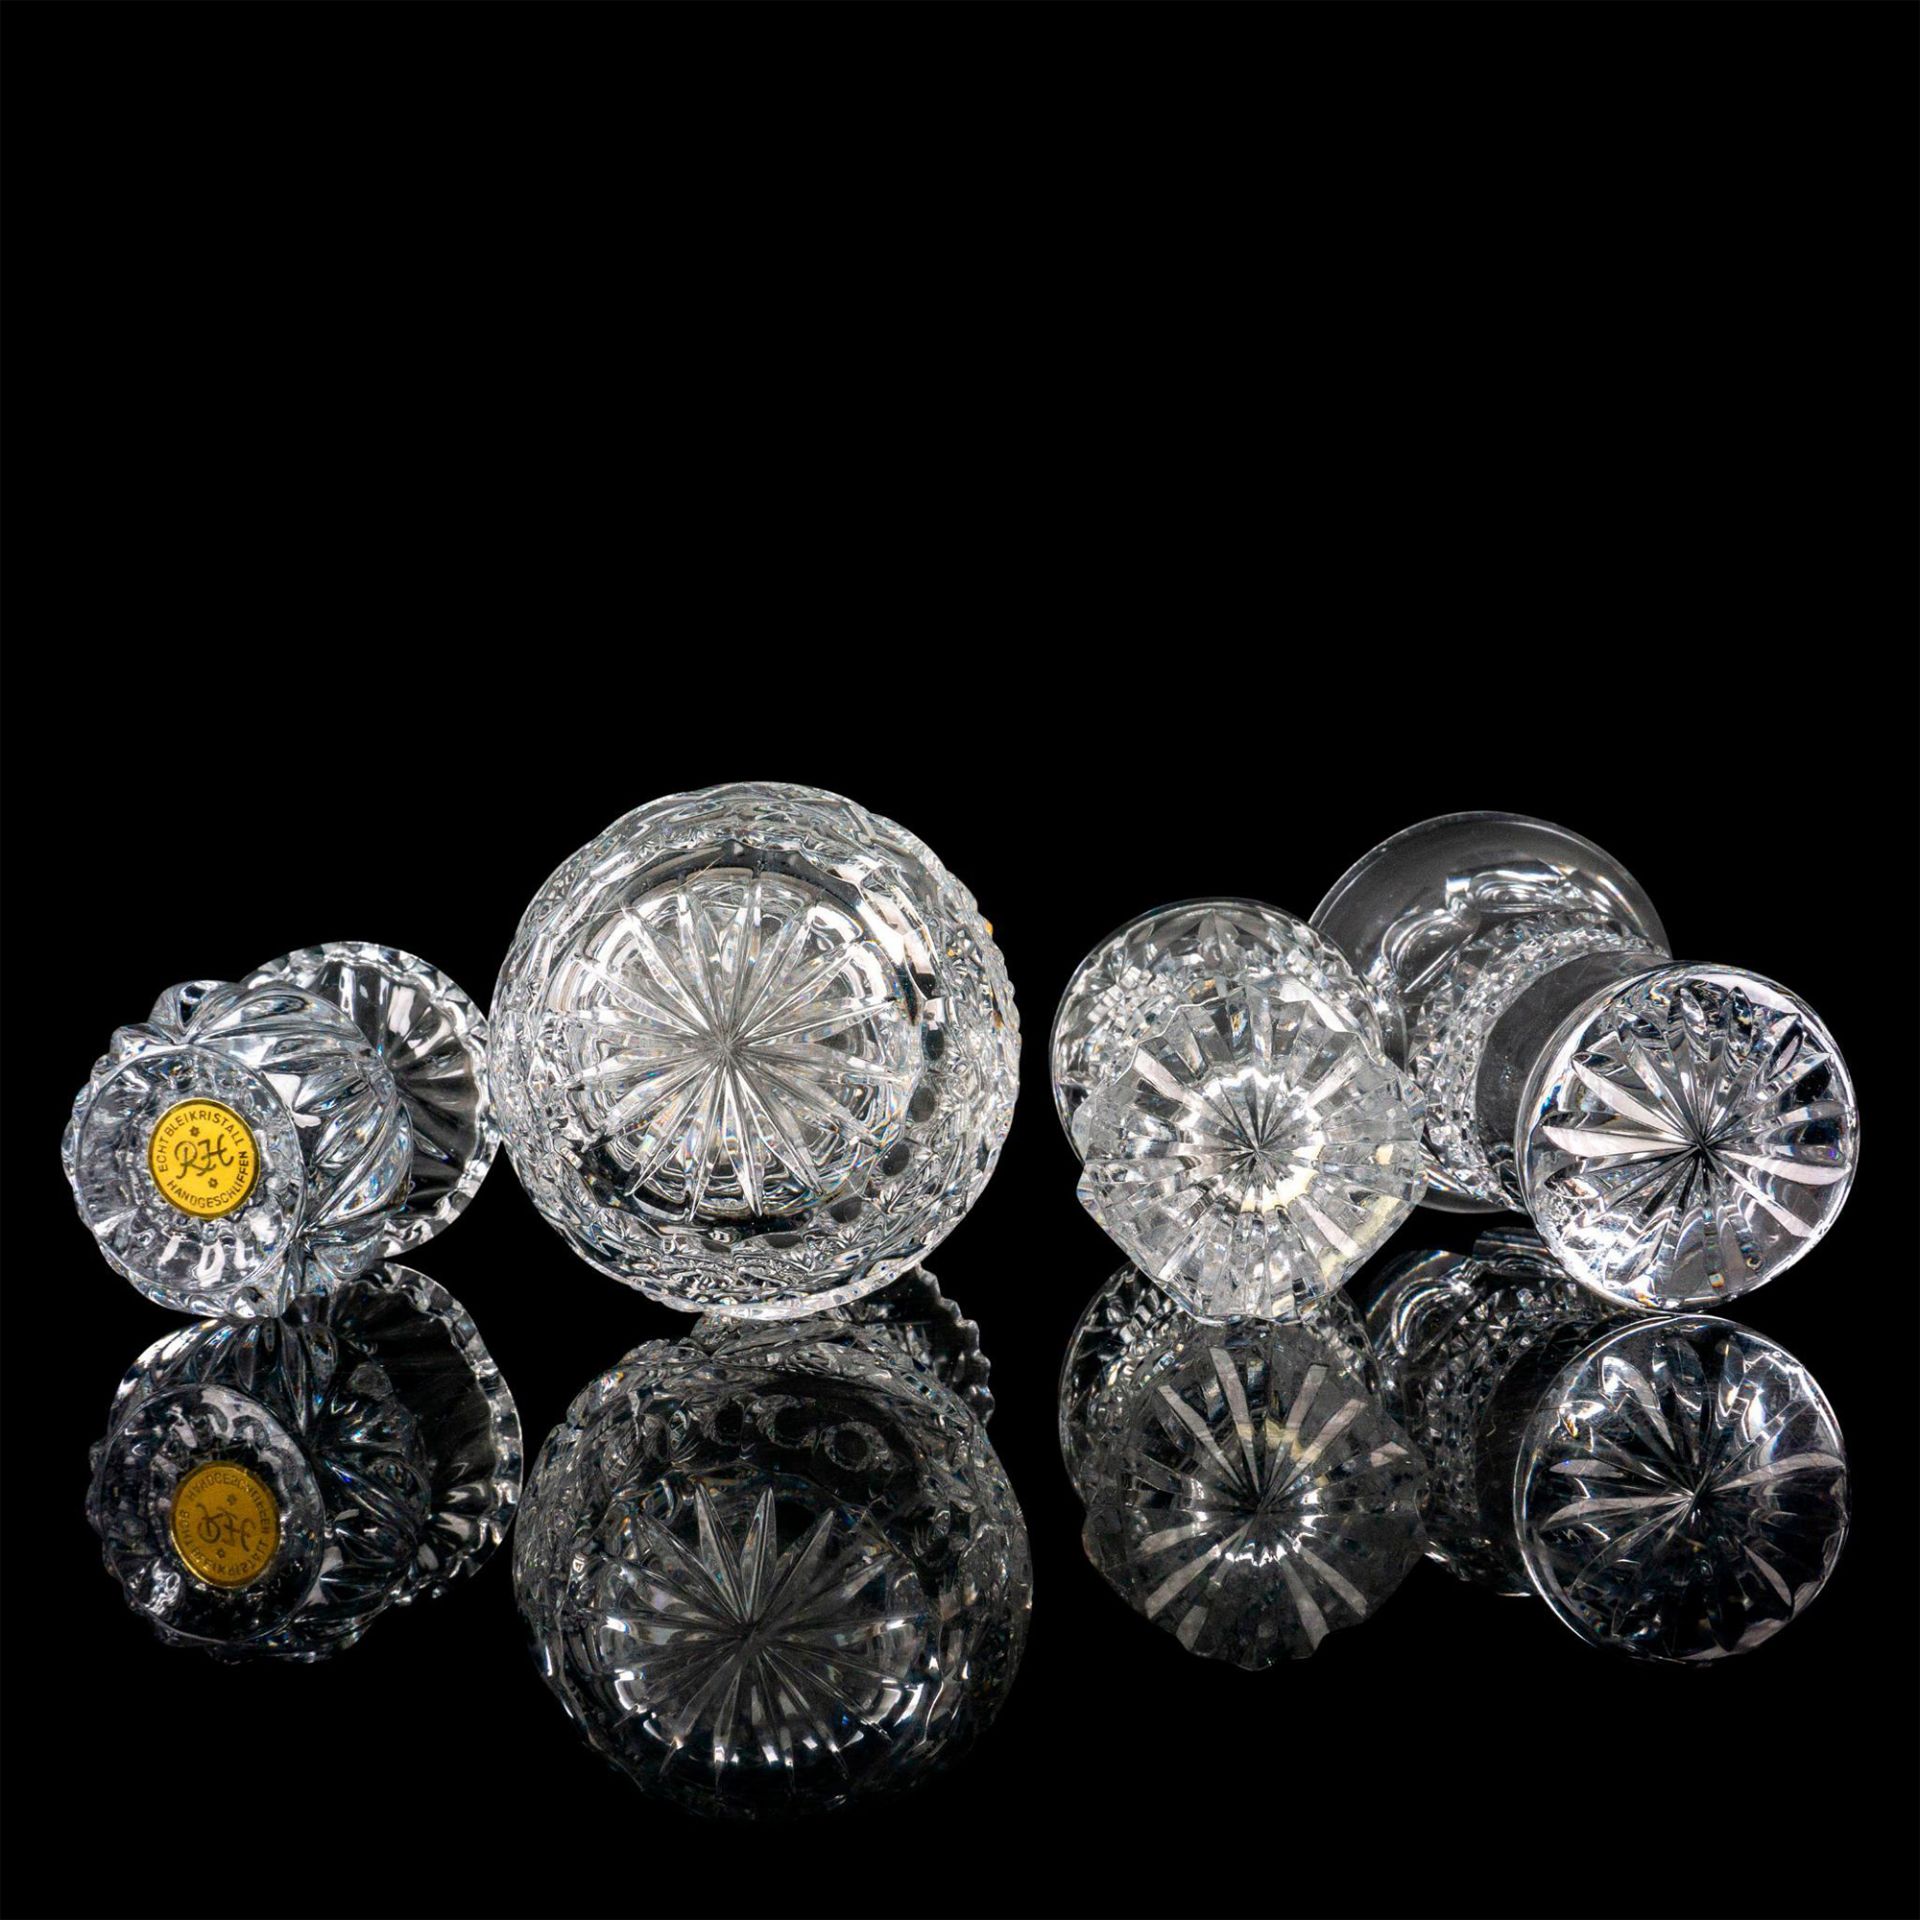 4pc Crystal Miniature Vase Set - Image 2 of 2